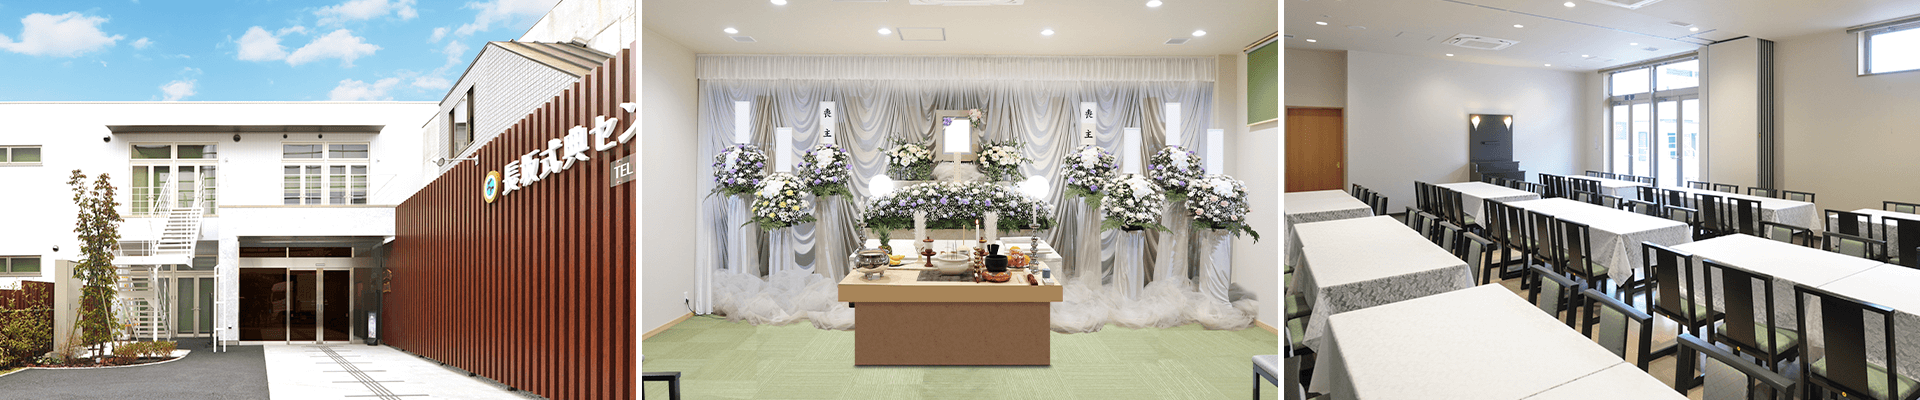 葬儀・葬式・家族葬なら16.5万円からできる長坂式典センター 小平市の葬儀場一覧